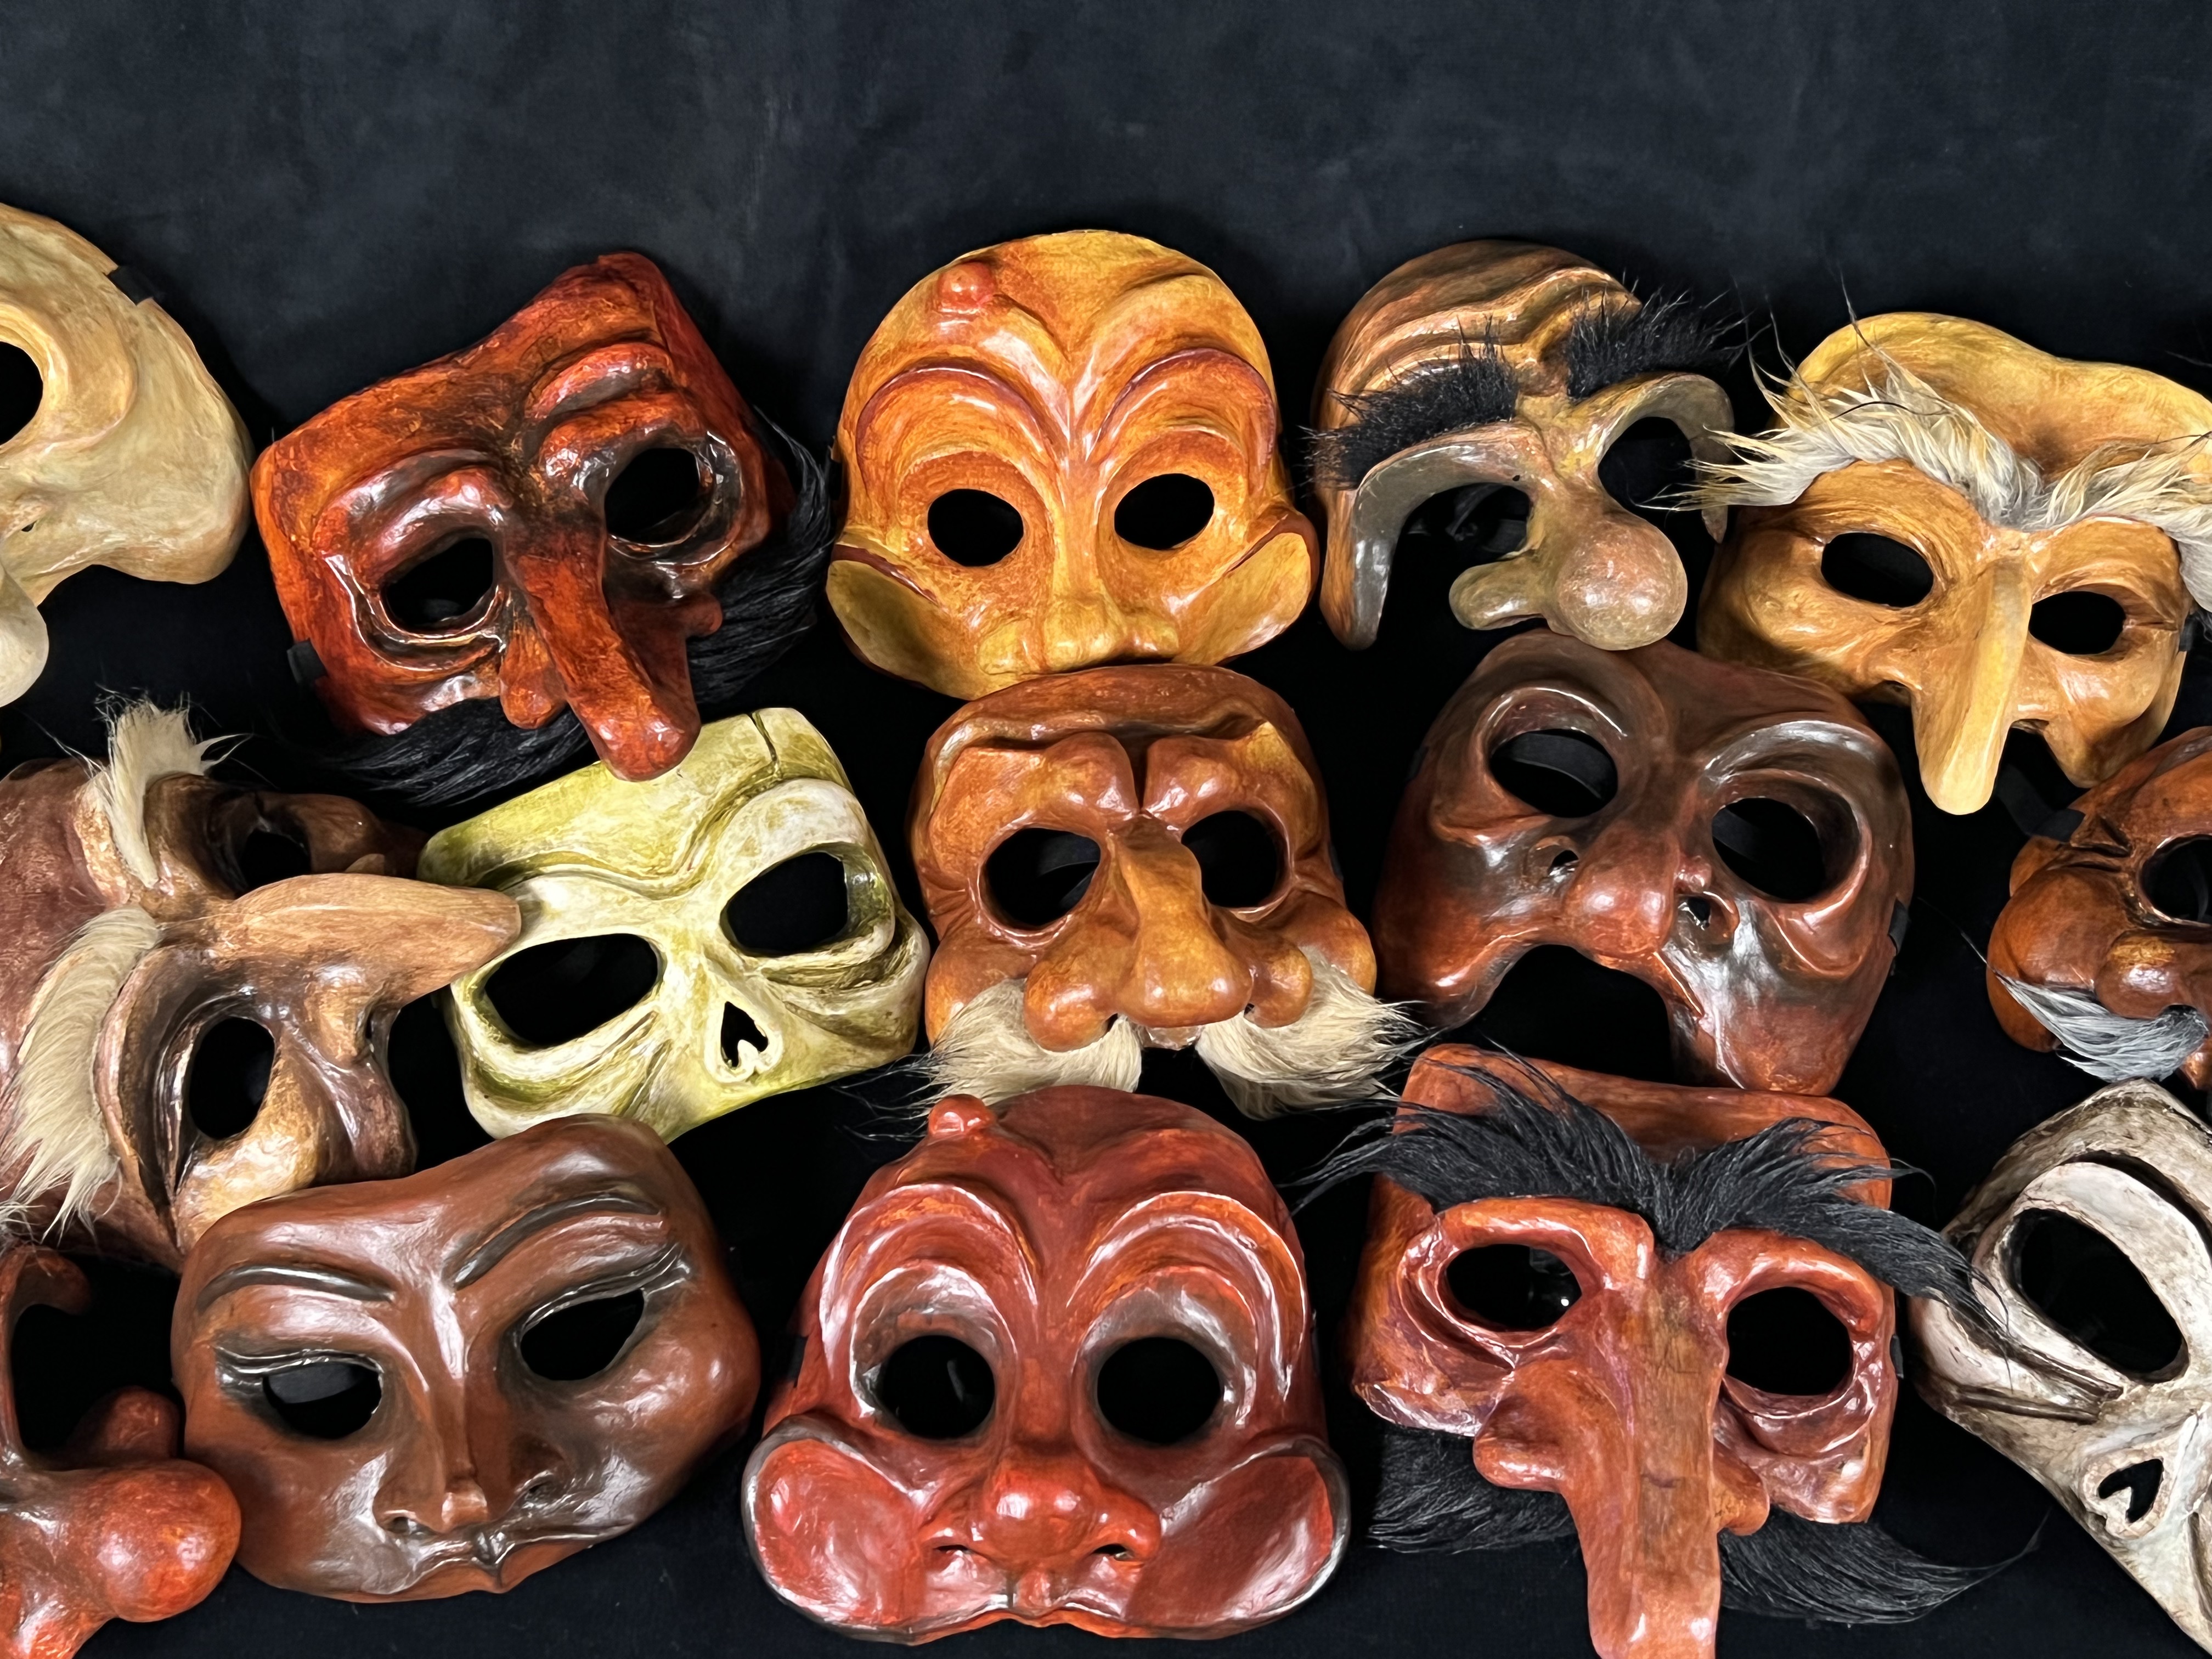 https://greenfools.com/wp-content/uploads/2022/04/Commedia-Masks-1-1.jpeg